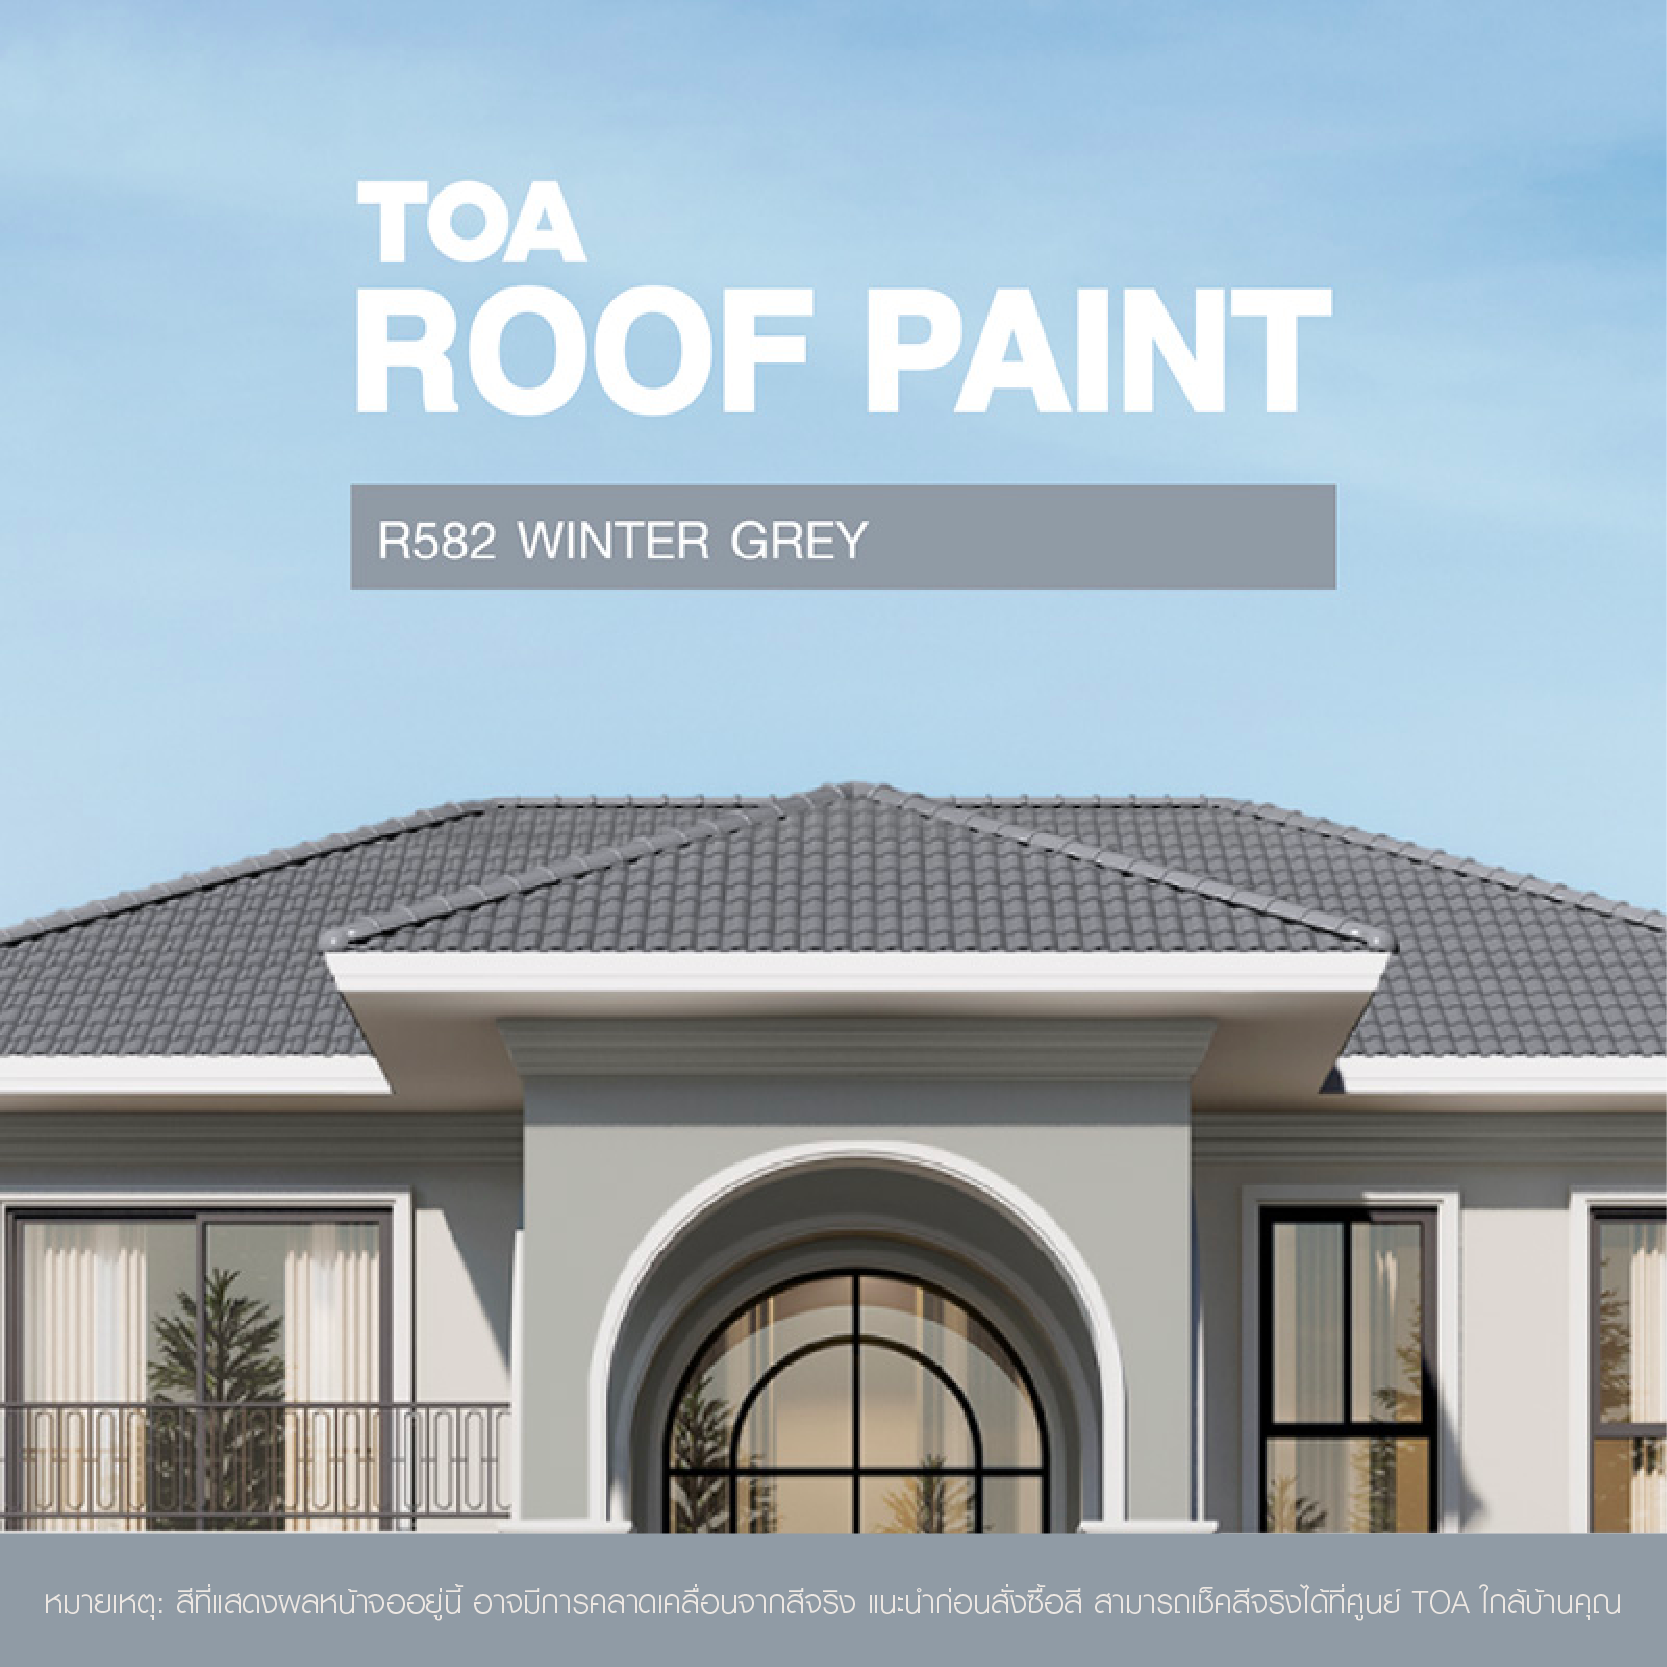 ถ้าคุณ กำลัง มองหา หลังคาบ้าน สีไหนสวย ขอแนะนำ  กระเบื้อง หลังคา สี เทา เหมันต์ (Winter Grey)